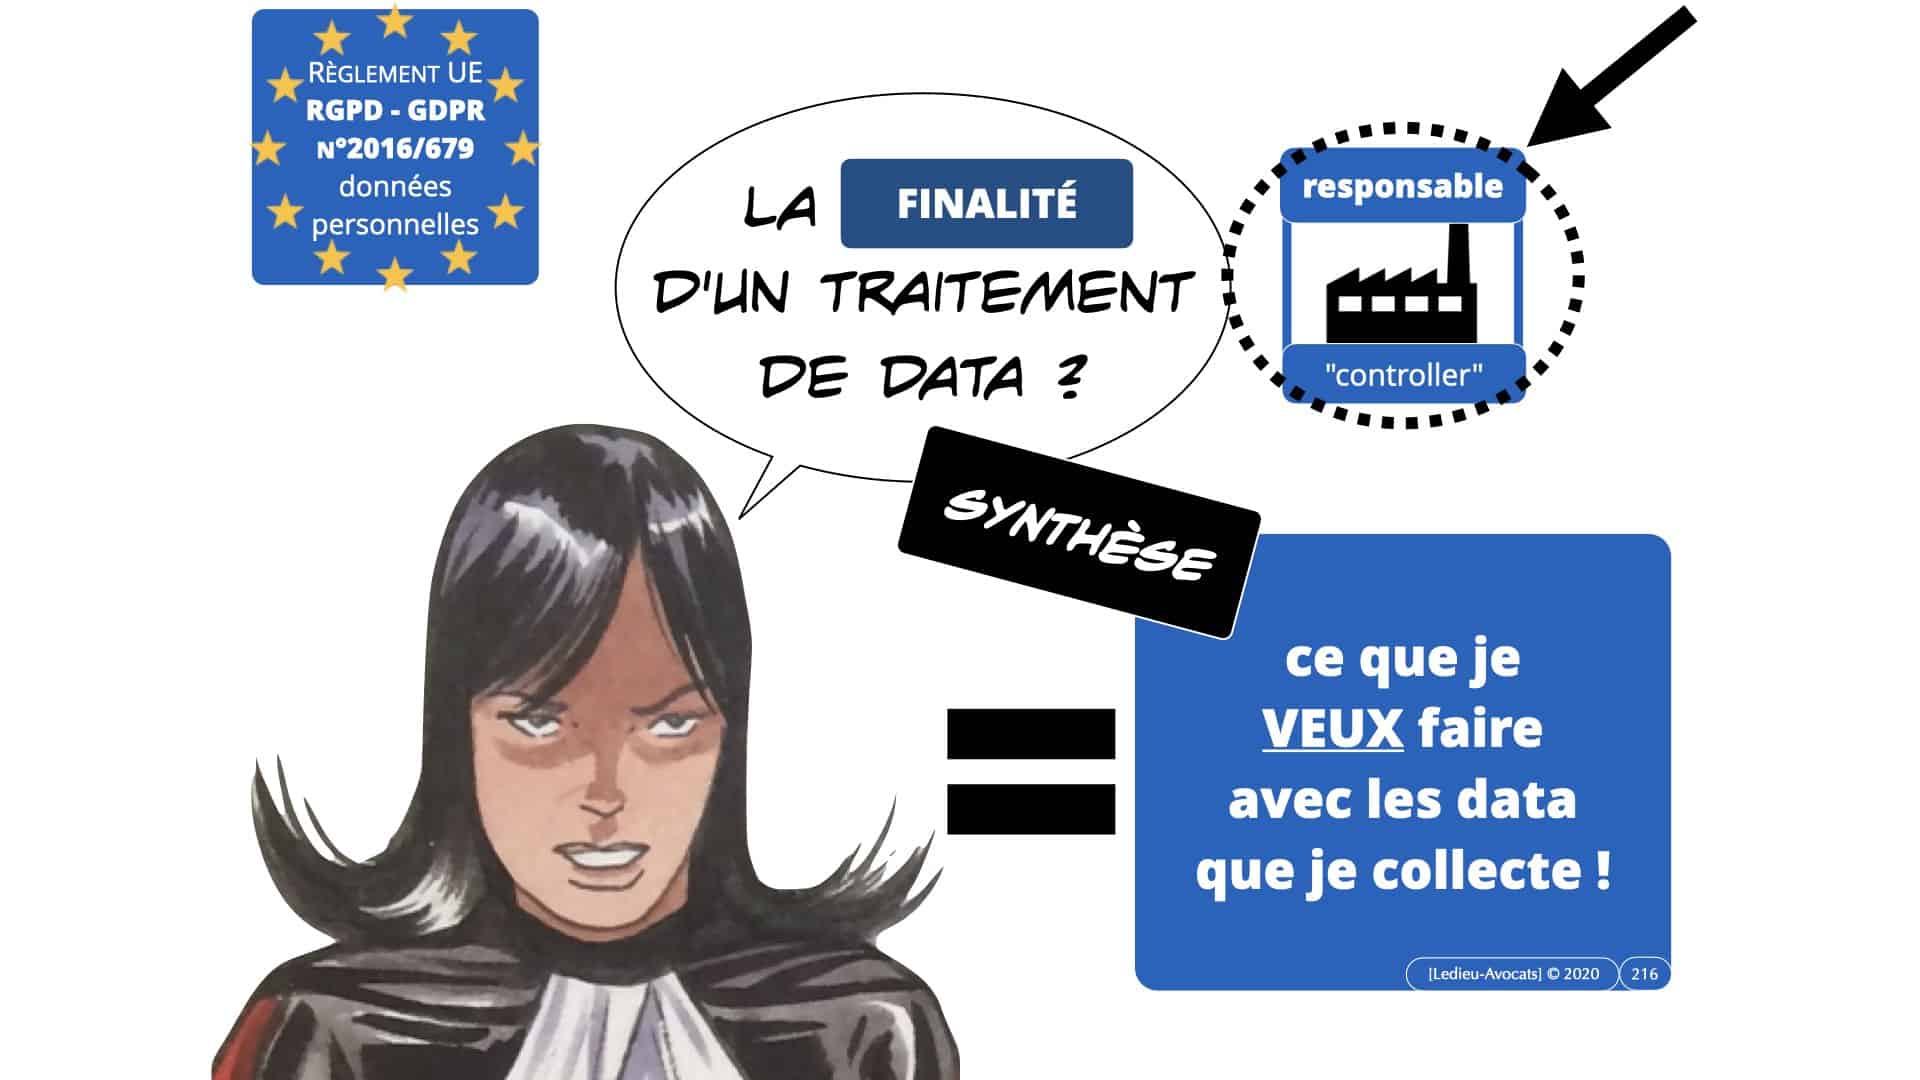 RGPD e-Privacy données personnelles jurisprudence formation Lamy Les Echos 10-02-2021 ©Ledieu-Avocats.216